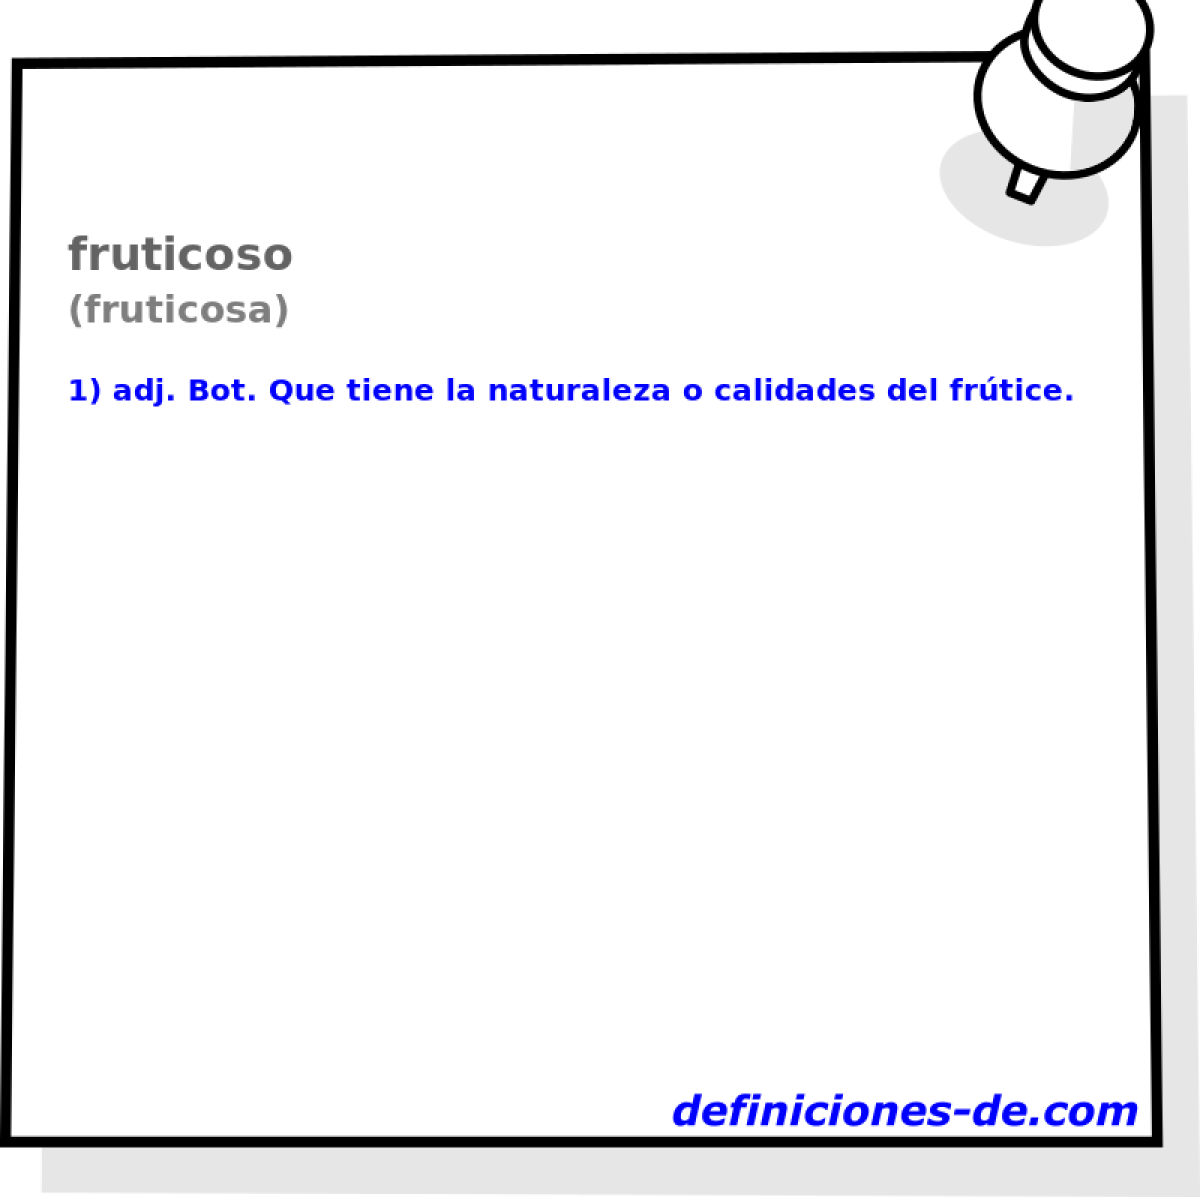 fruticoso (fruticosa)